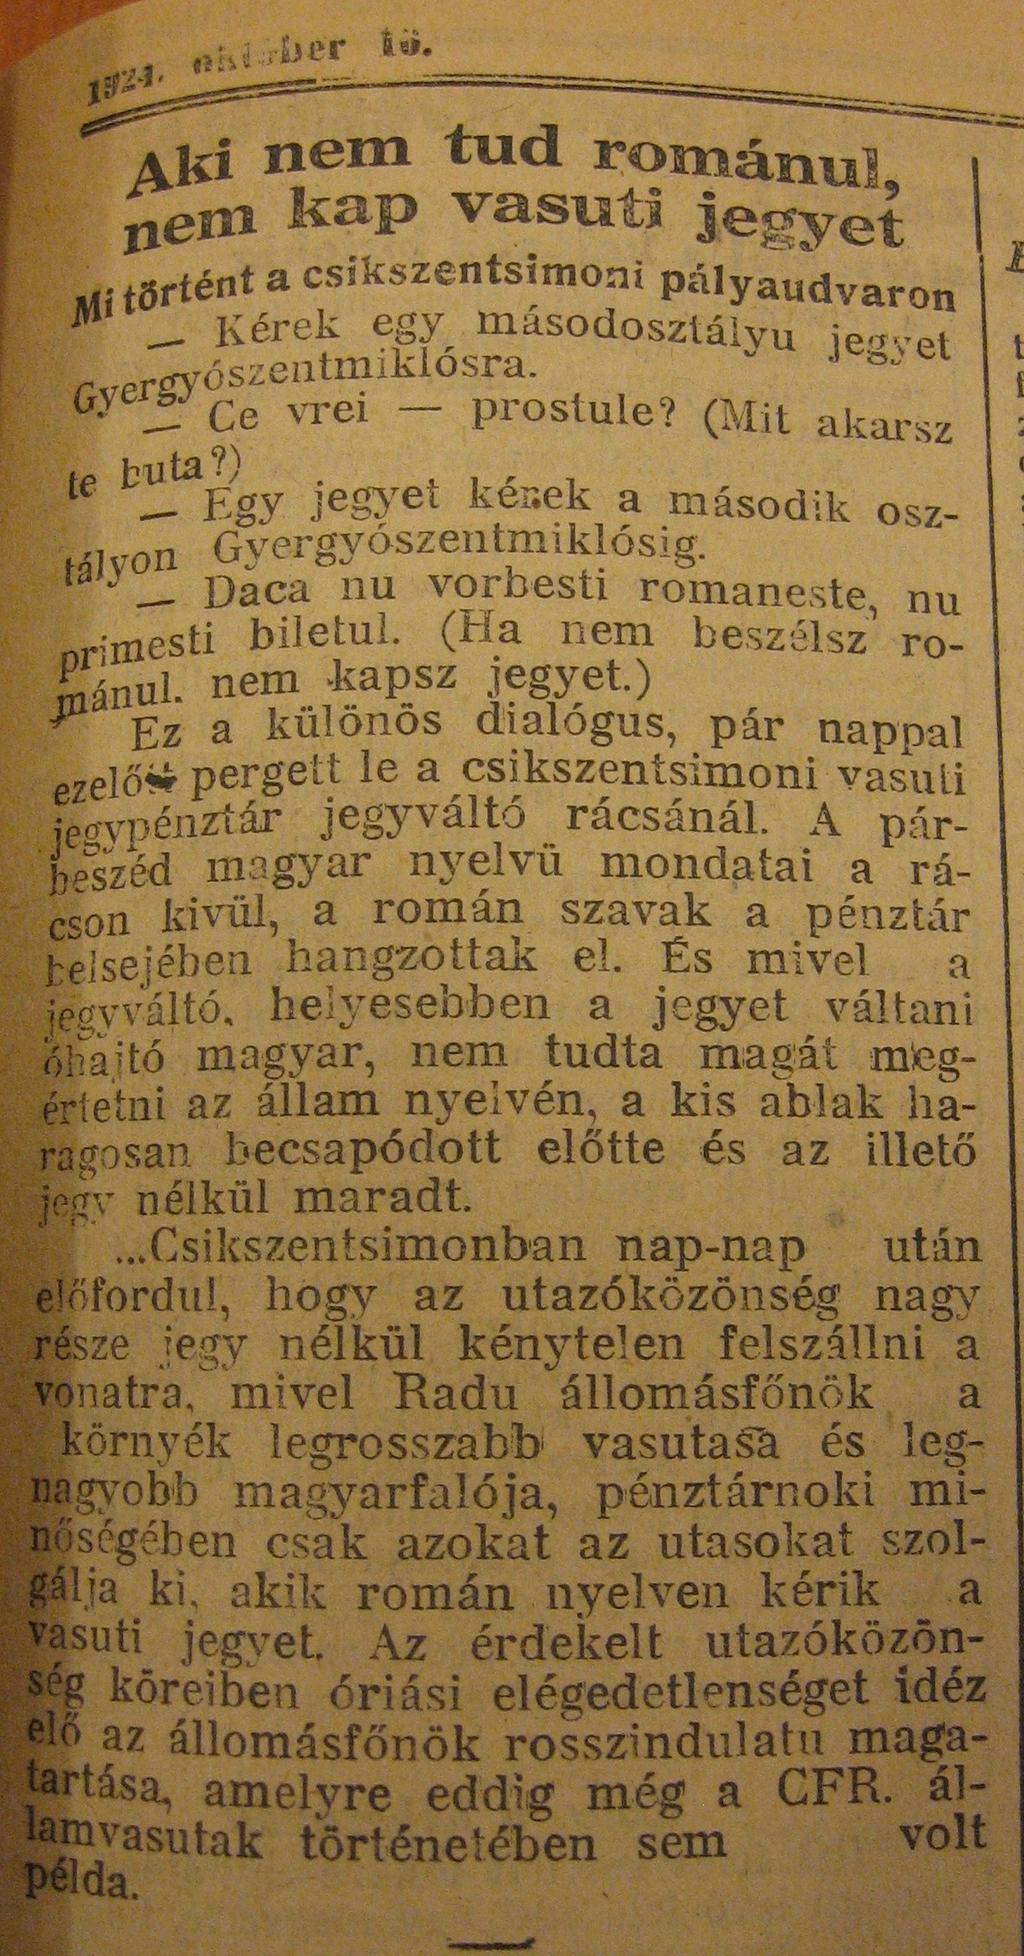 -1922/1286 sz. rendelet előírja, hogy 1923. április 1-ig az a volt MÁV alkalmazott aki nem tud megfelelően románul azt állásából el kell bocsátani.